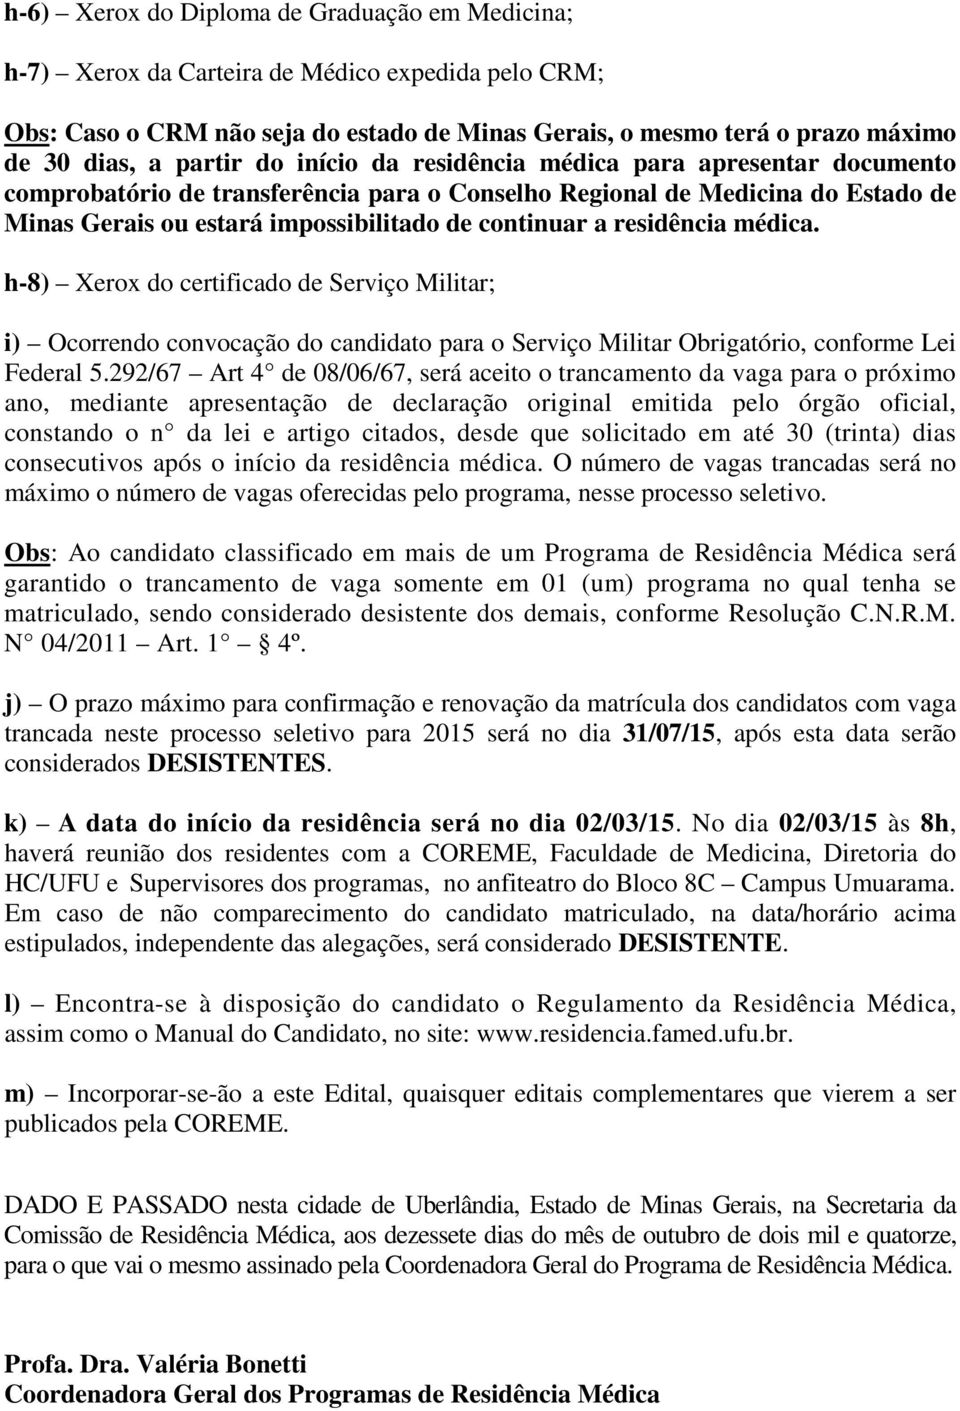 residência médica. h-8) Xerox do certificado de Serviço Militar; i) Ocorrendo convocação do candidato para o Serviço Militar Obrigatório, conforme Lei Federal 5.